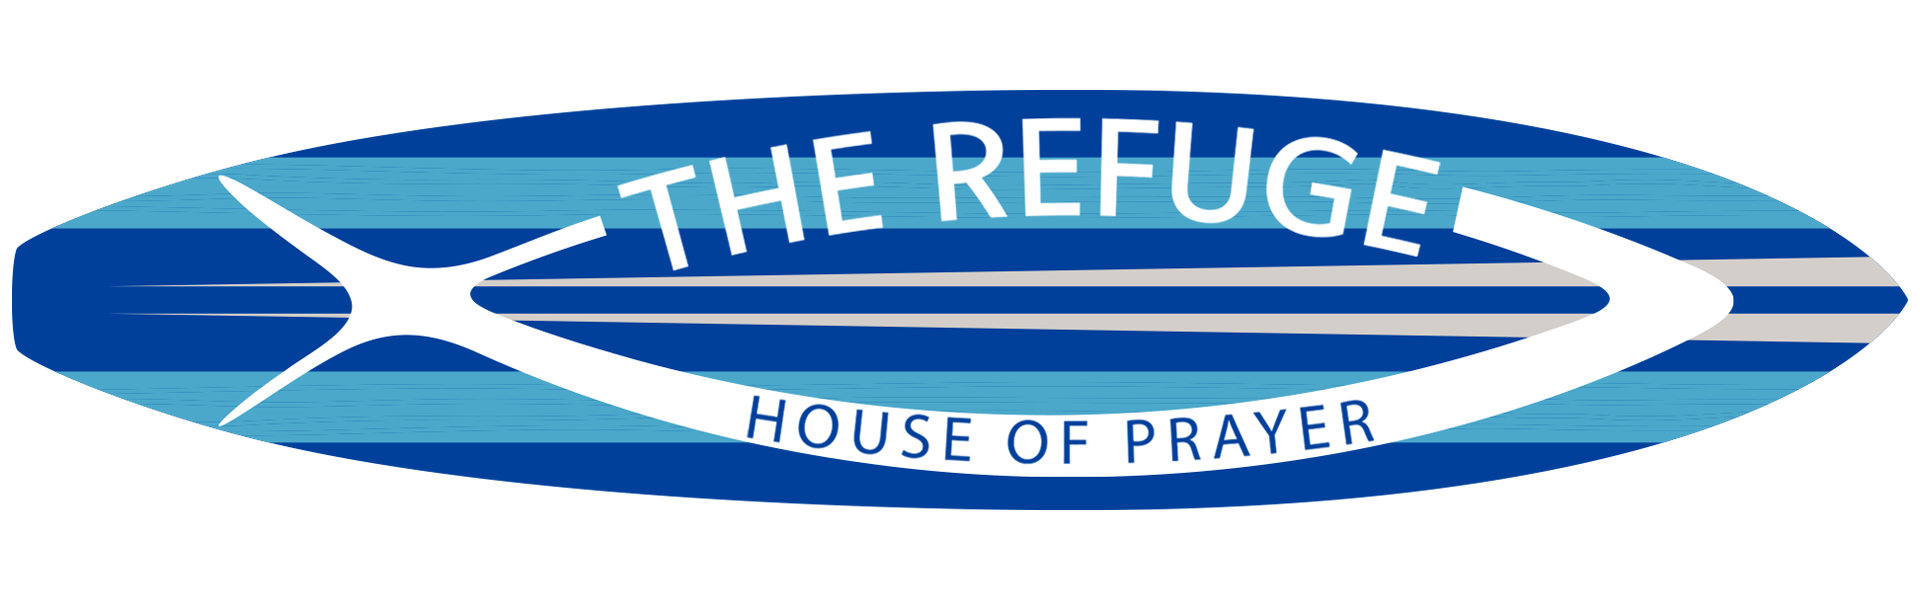 The Refuge House of Prayer